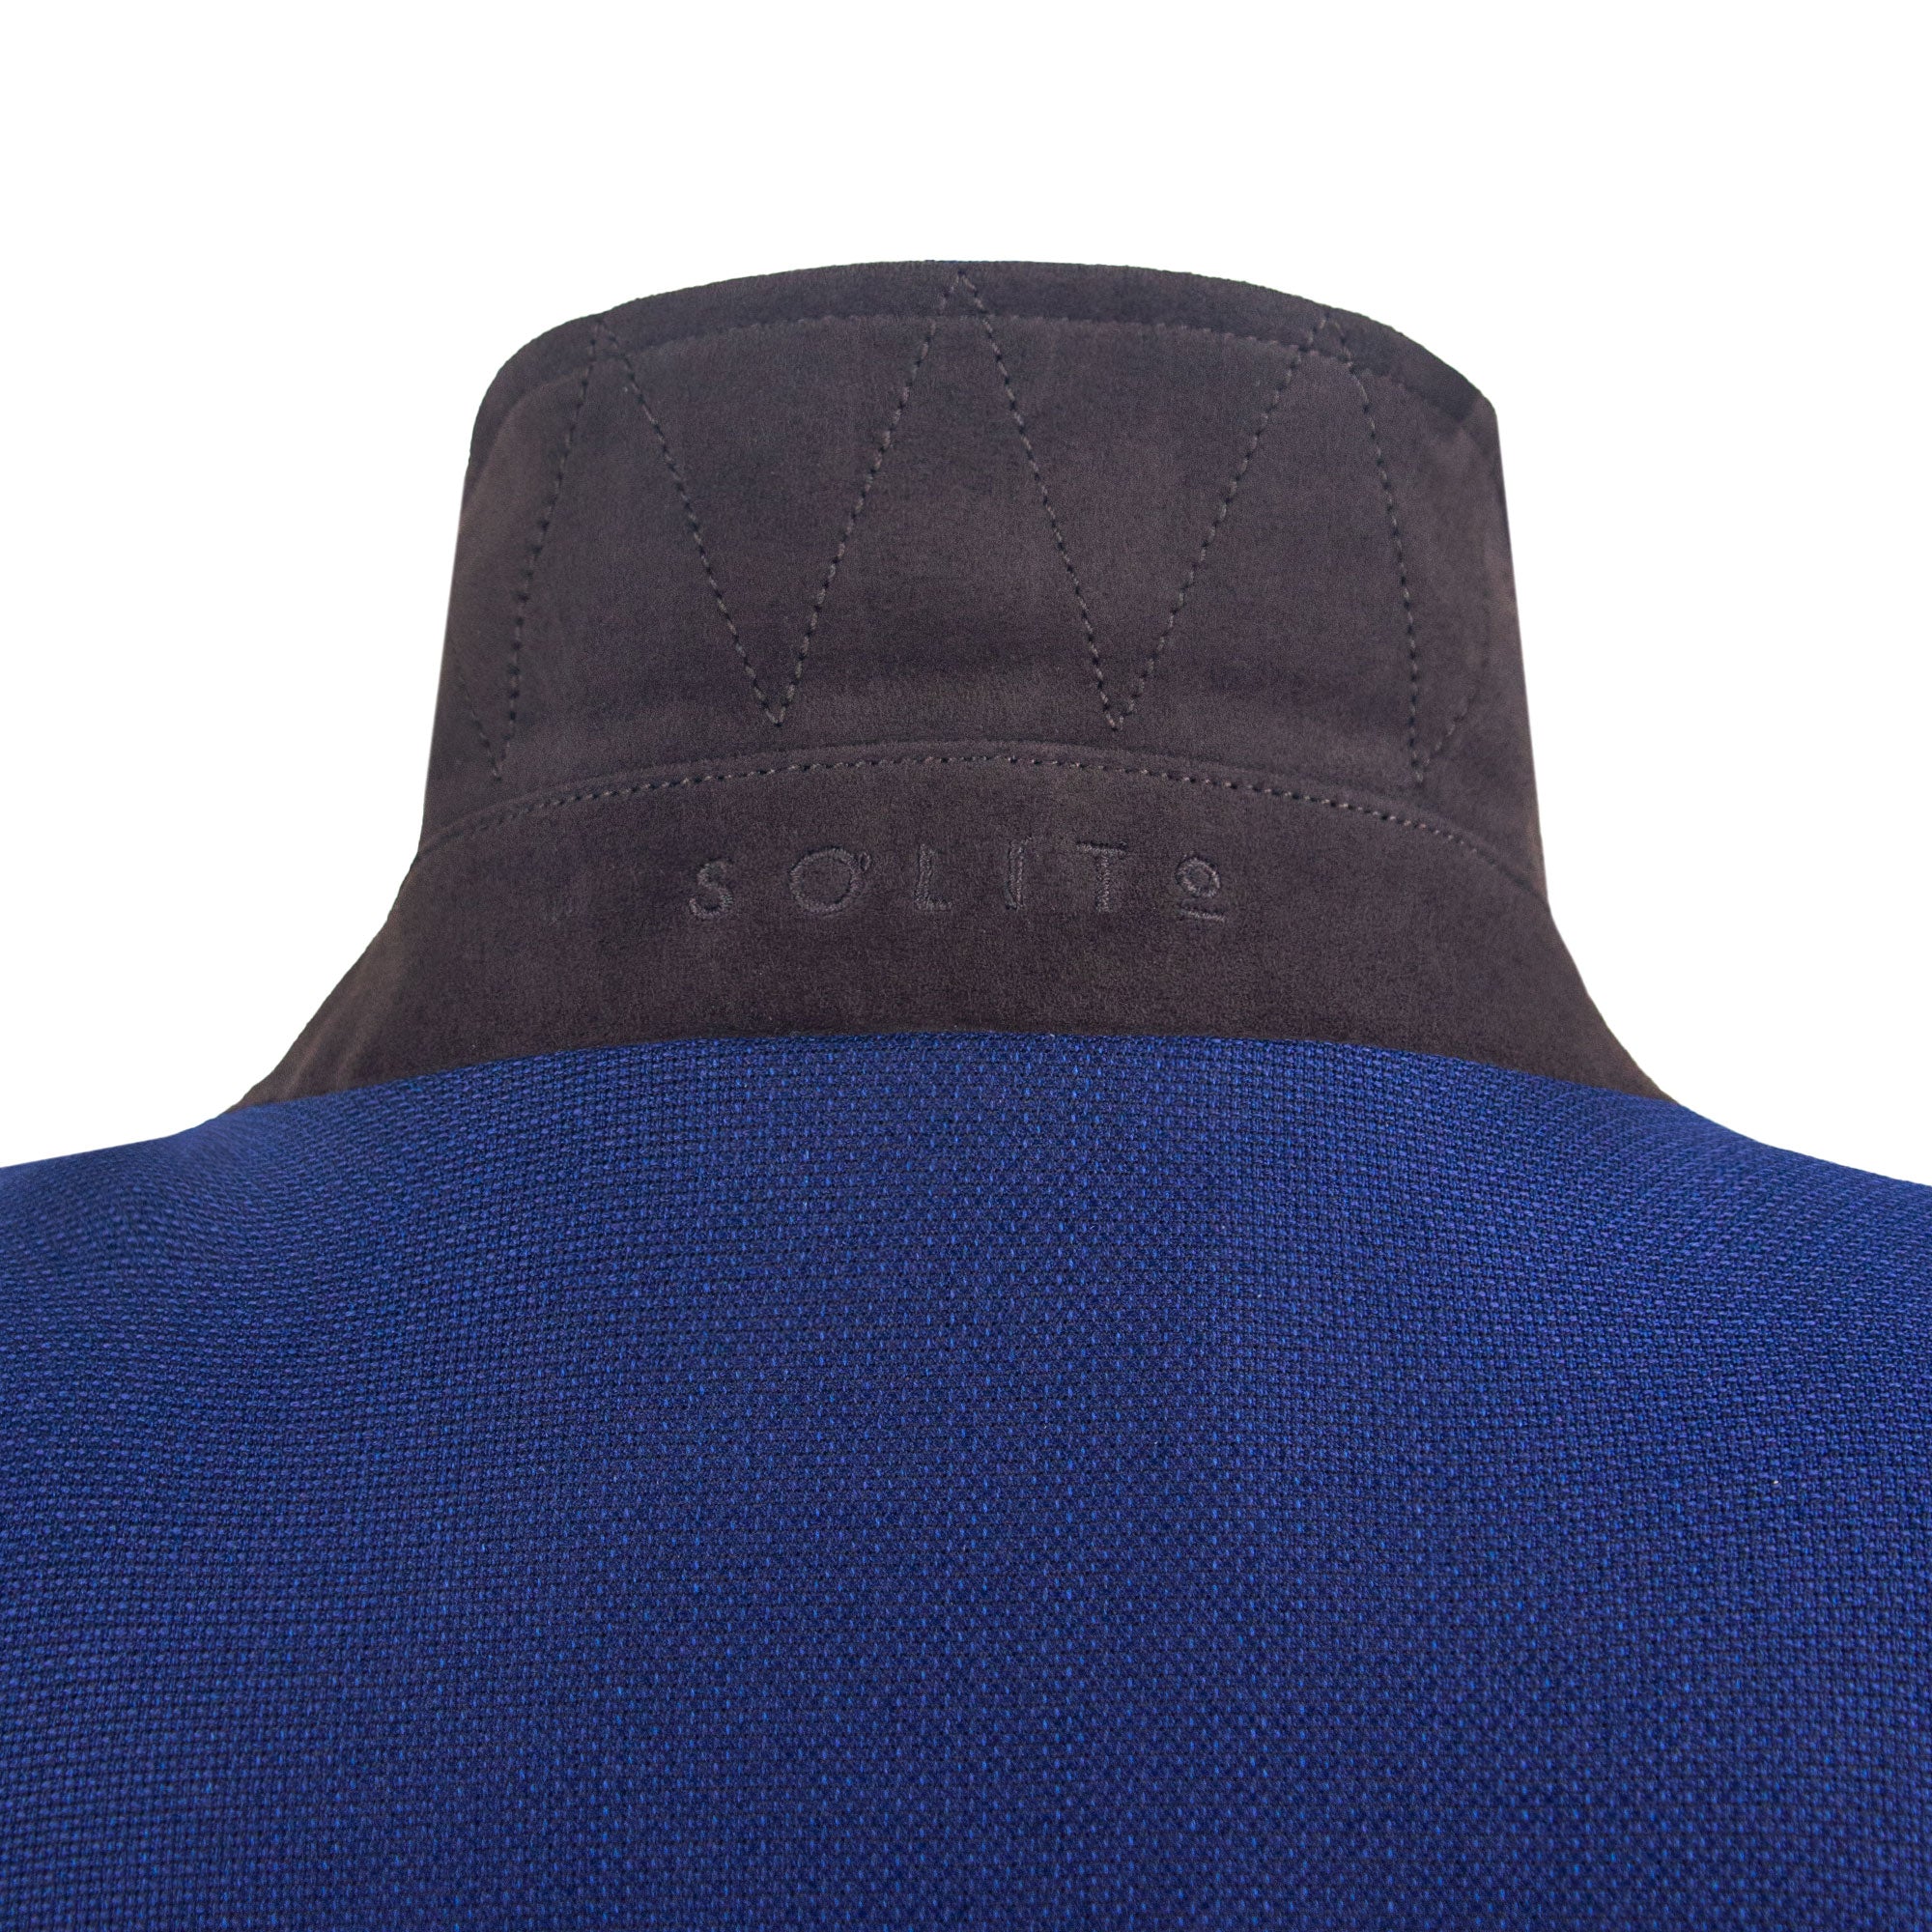 Chamarra corta de color azul con detalles en gamuza café y cuello camisa